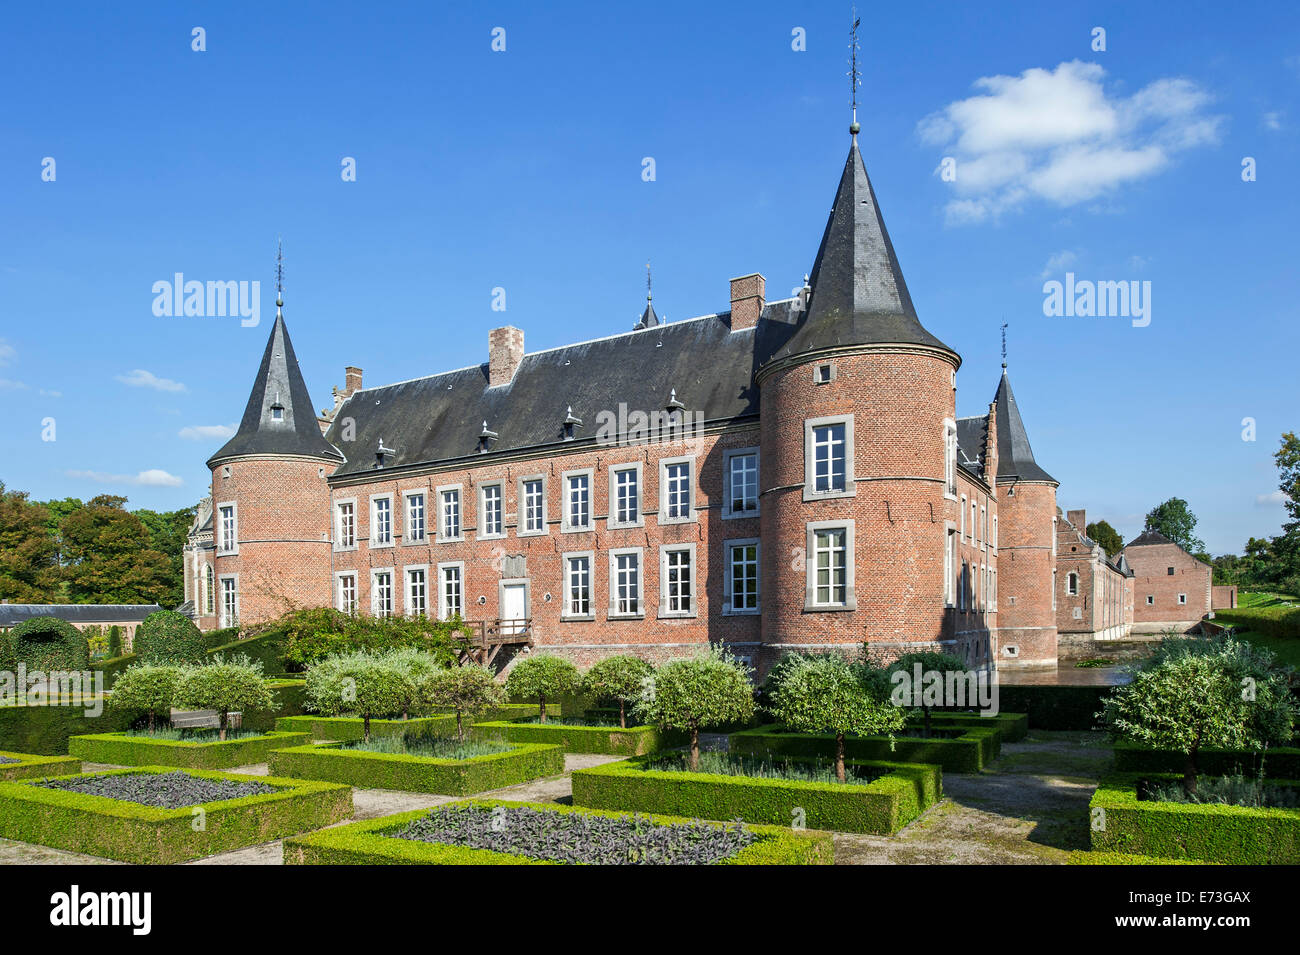 El Alden Biesen Landcommanderij / Encomienda de Alden Biesen, castillo del siglo XVI en Rijkhoven / bilzen, Bélgica Foto de stock